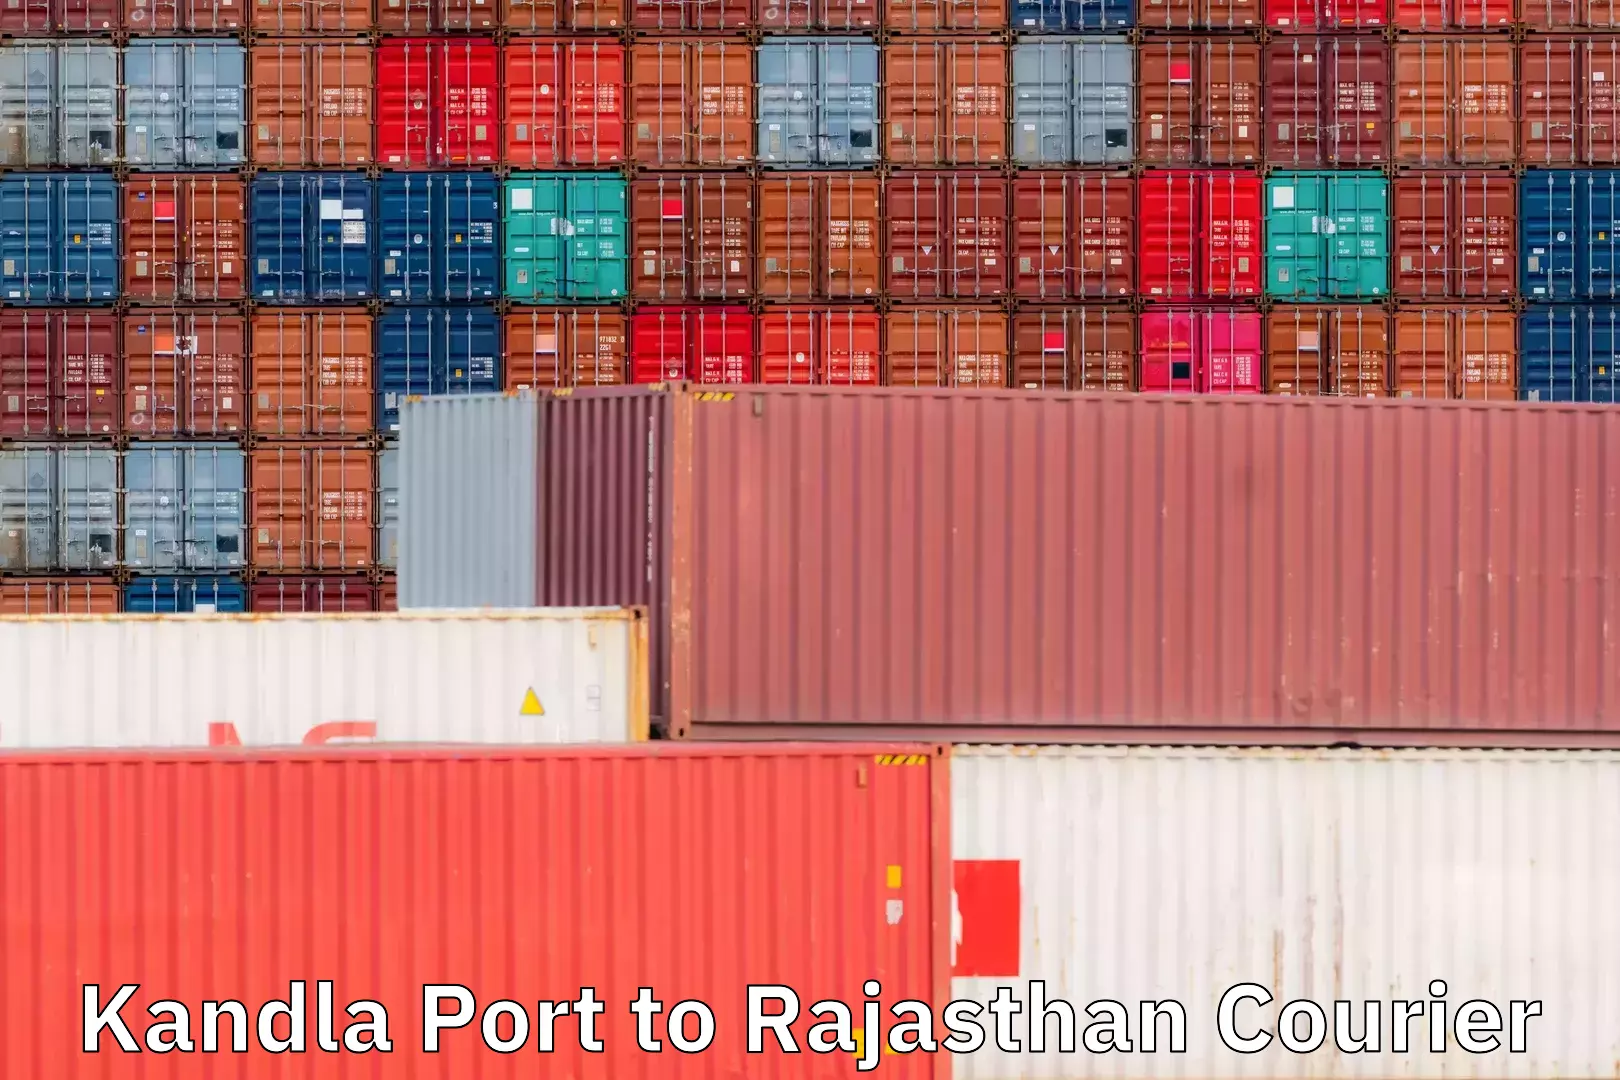 Affordable parcel service Kandla Port to Rajasthan